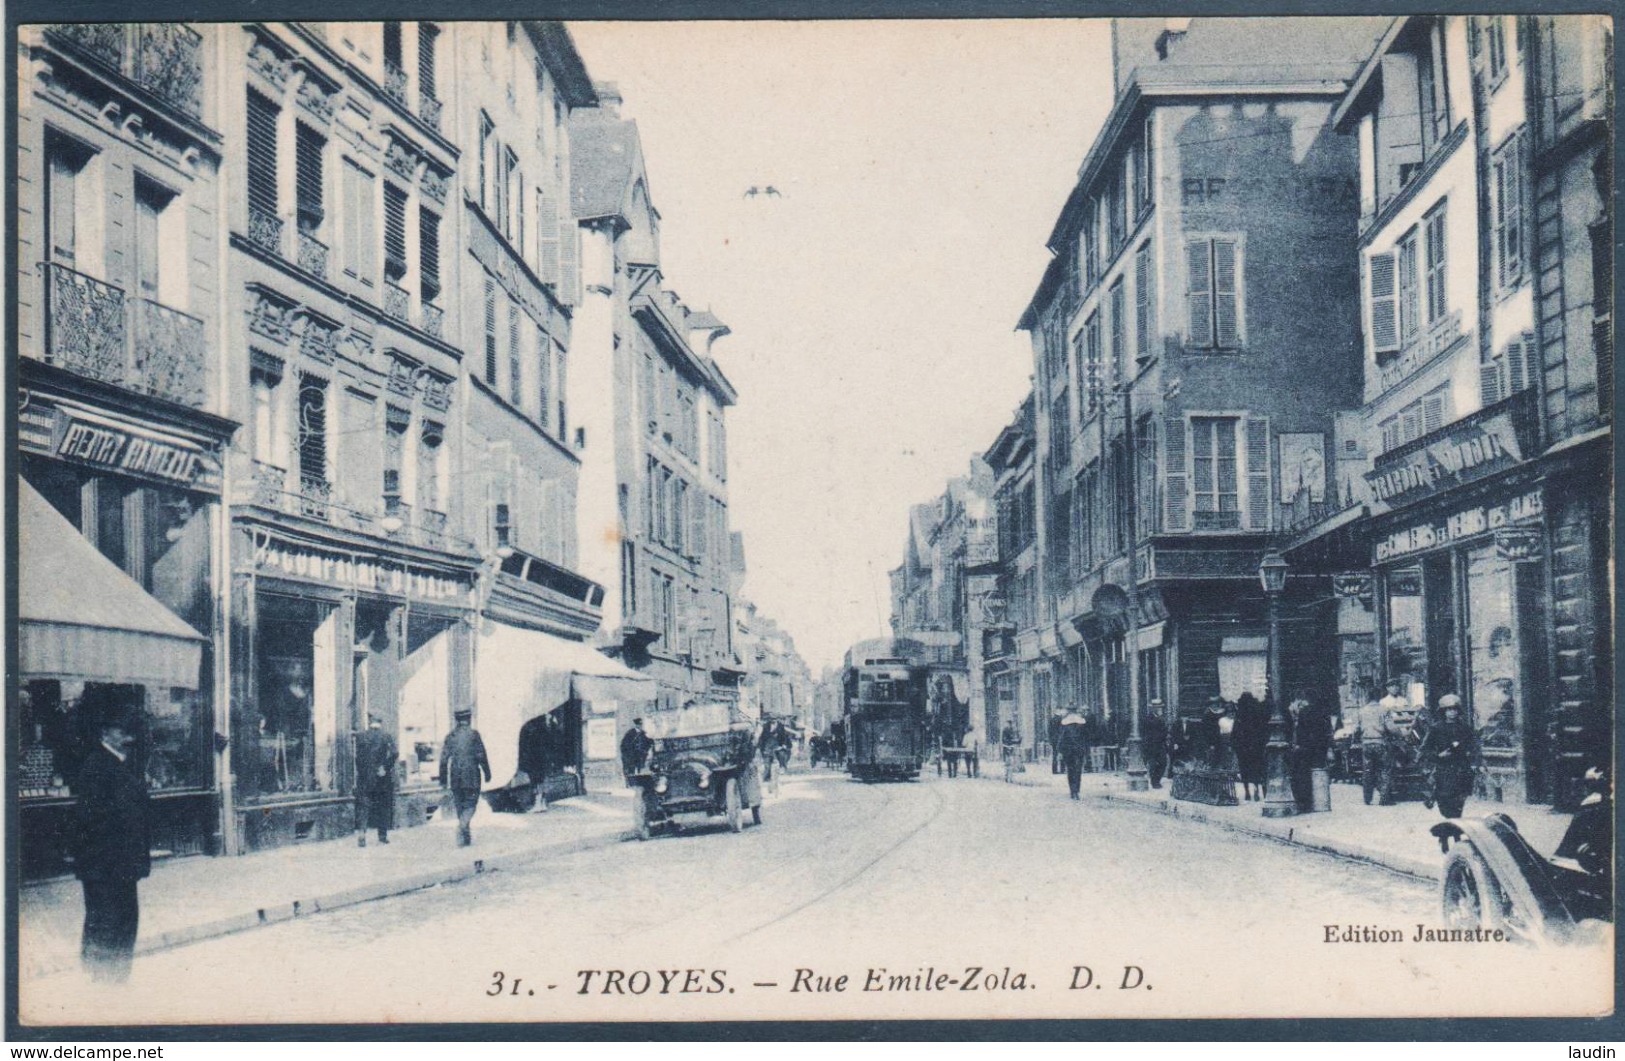 Lot 7 de 62 cartes postales Troyes uniquement , tous les visuels dans l'annonce